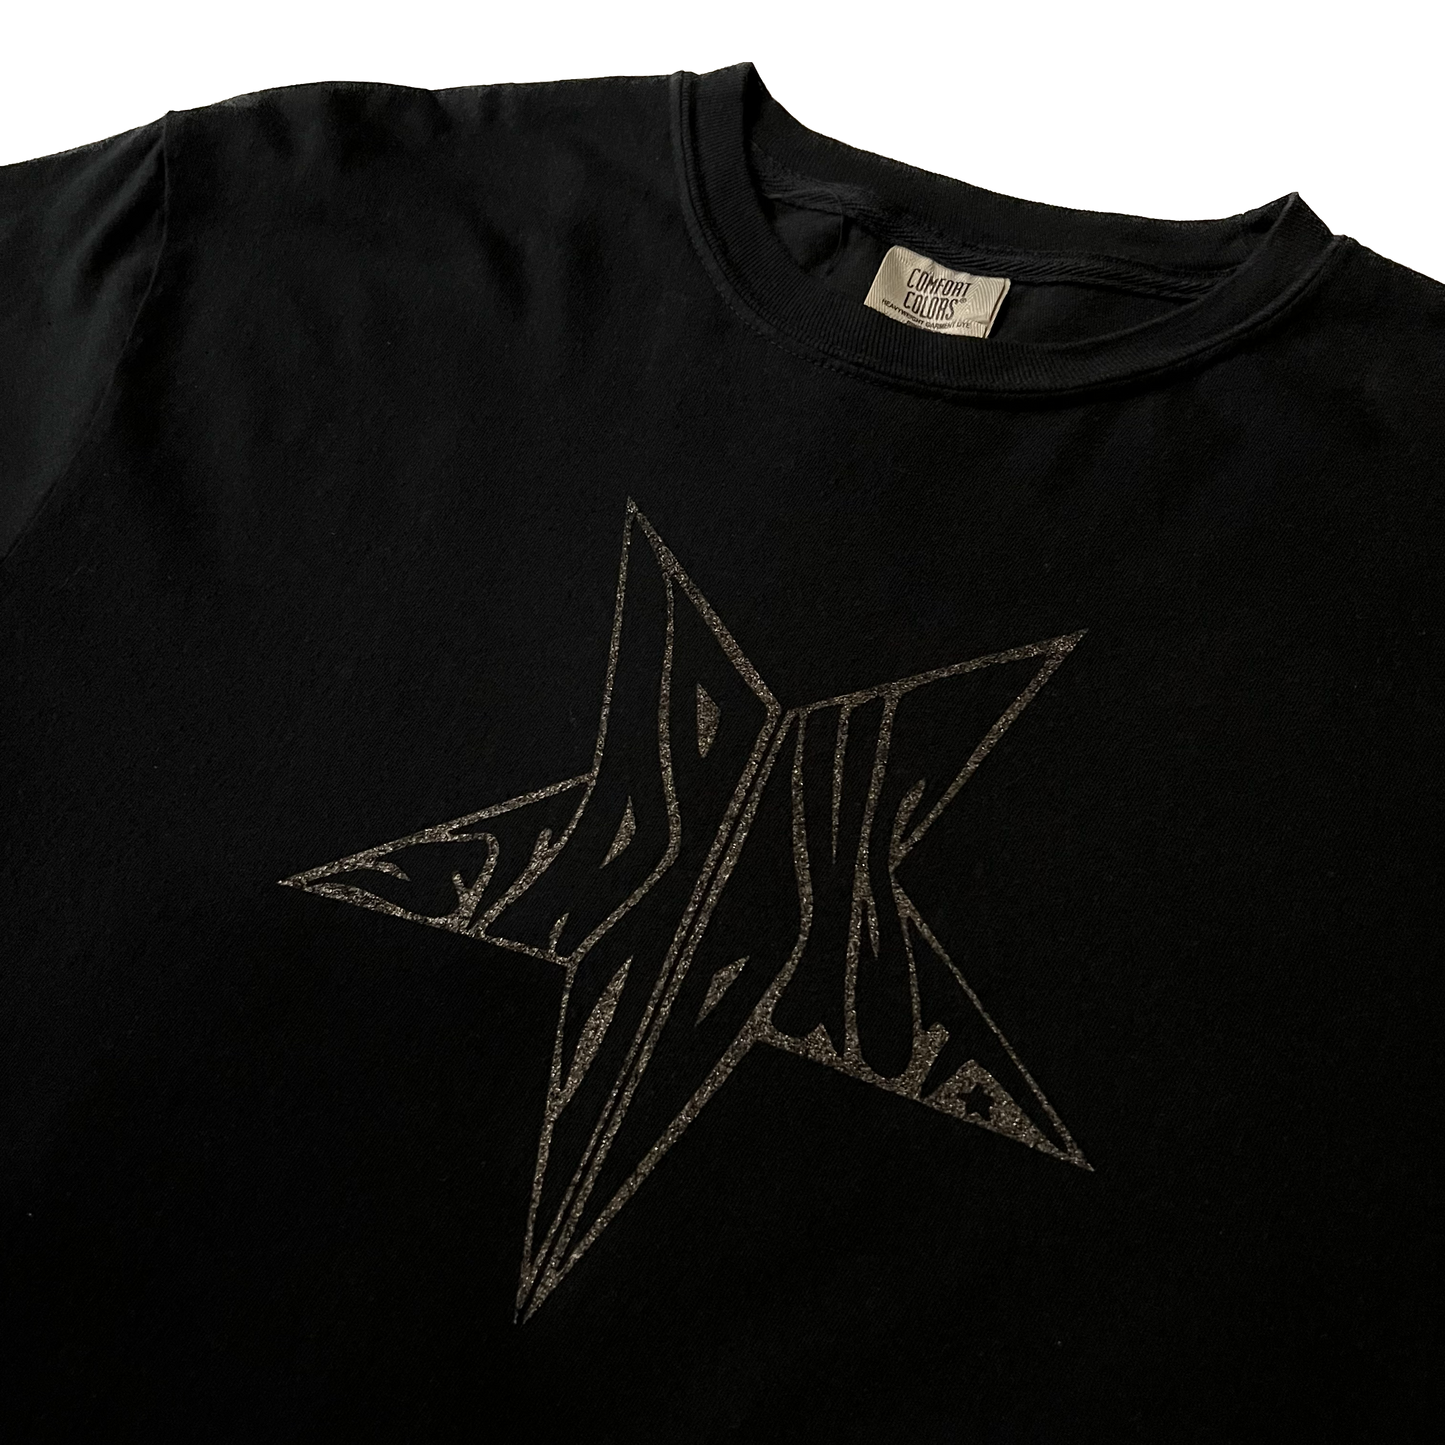 Stardust Skate Shop Black Shimmer Star Tee 026 - Assorted Colors - 6.1 oz